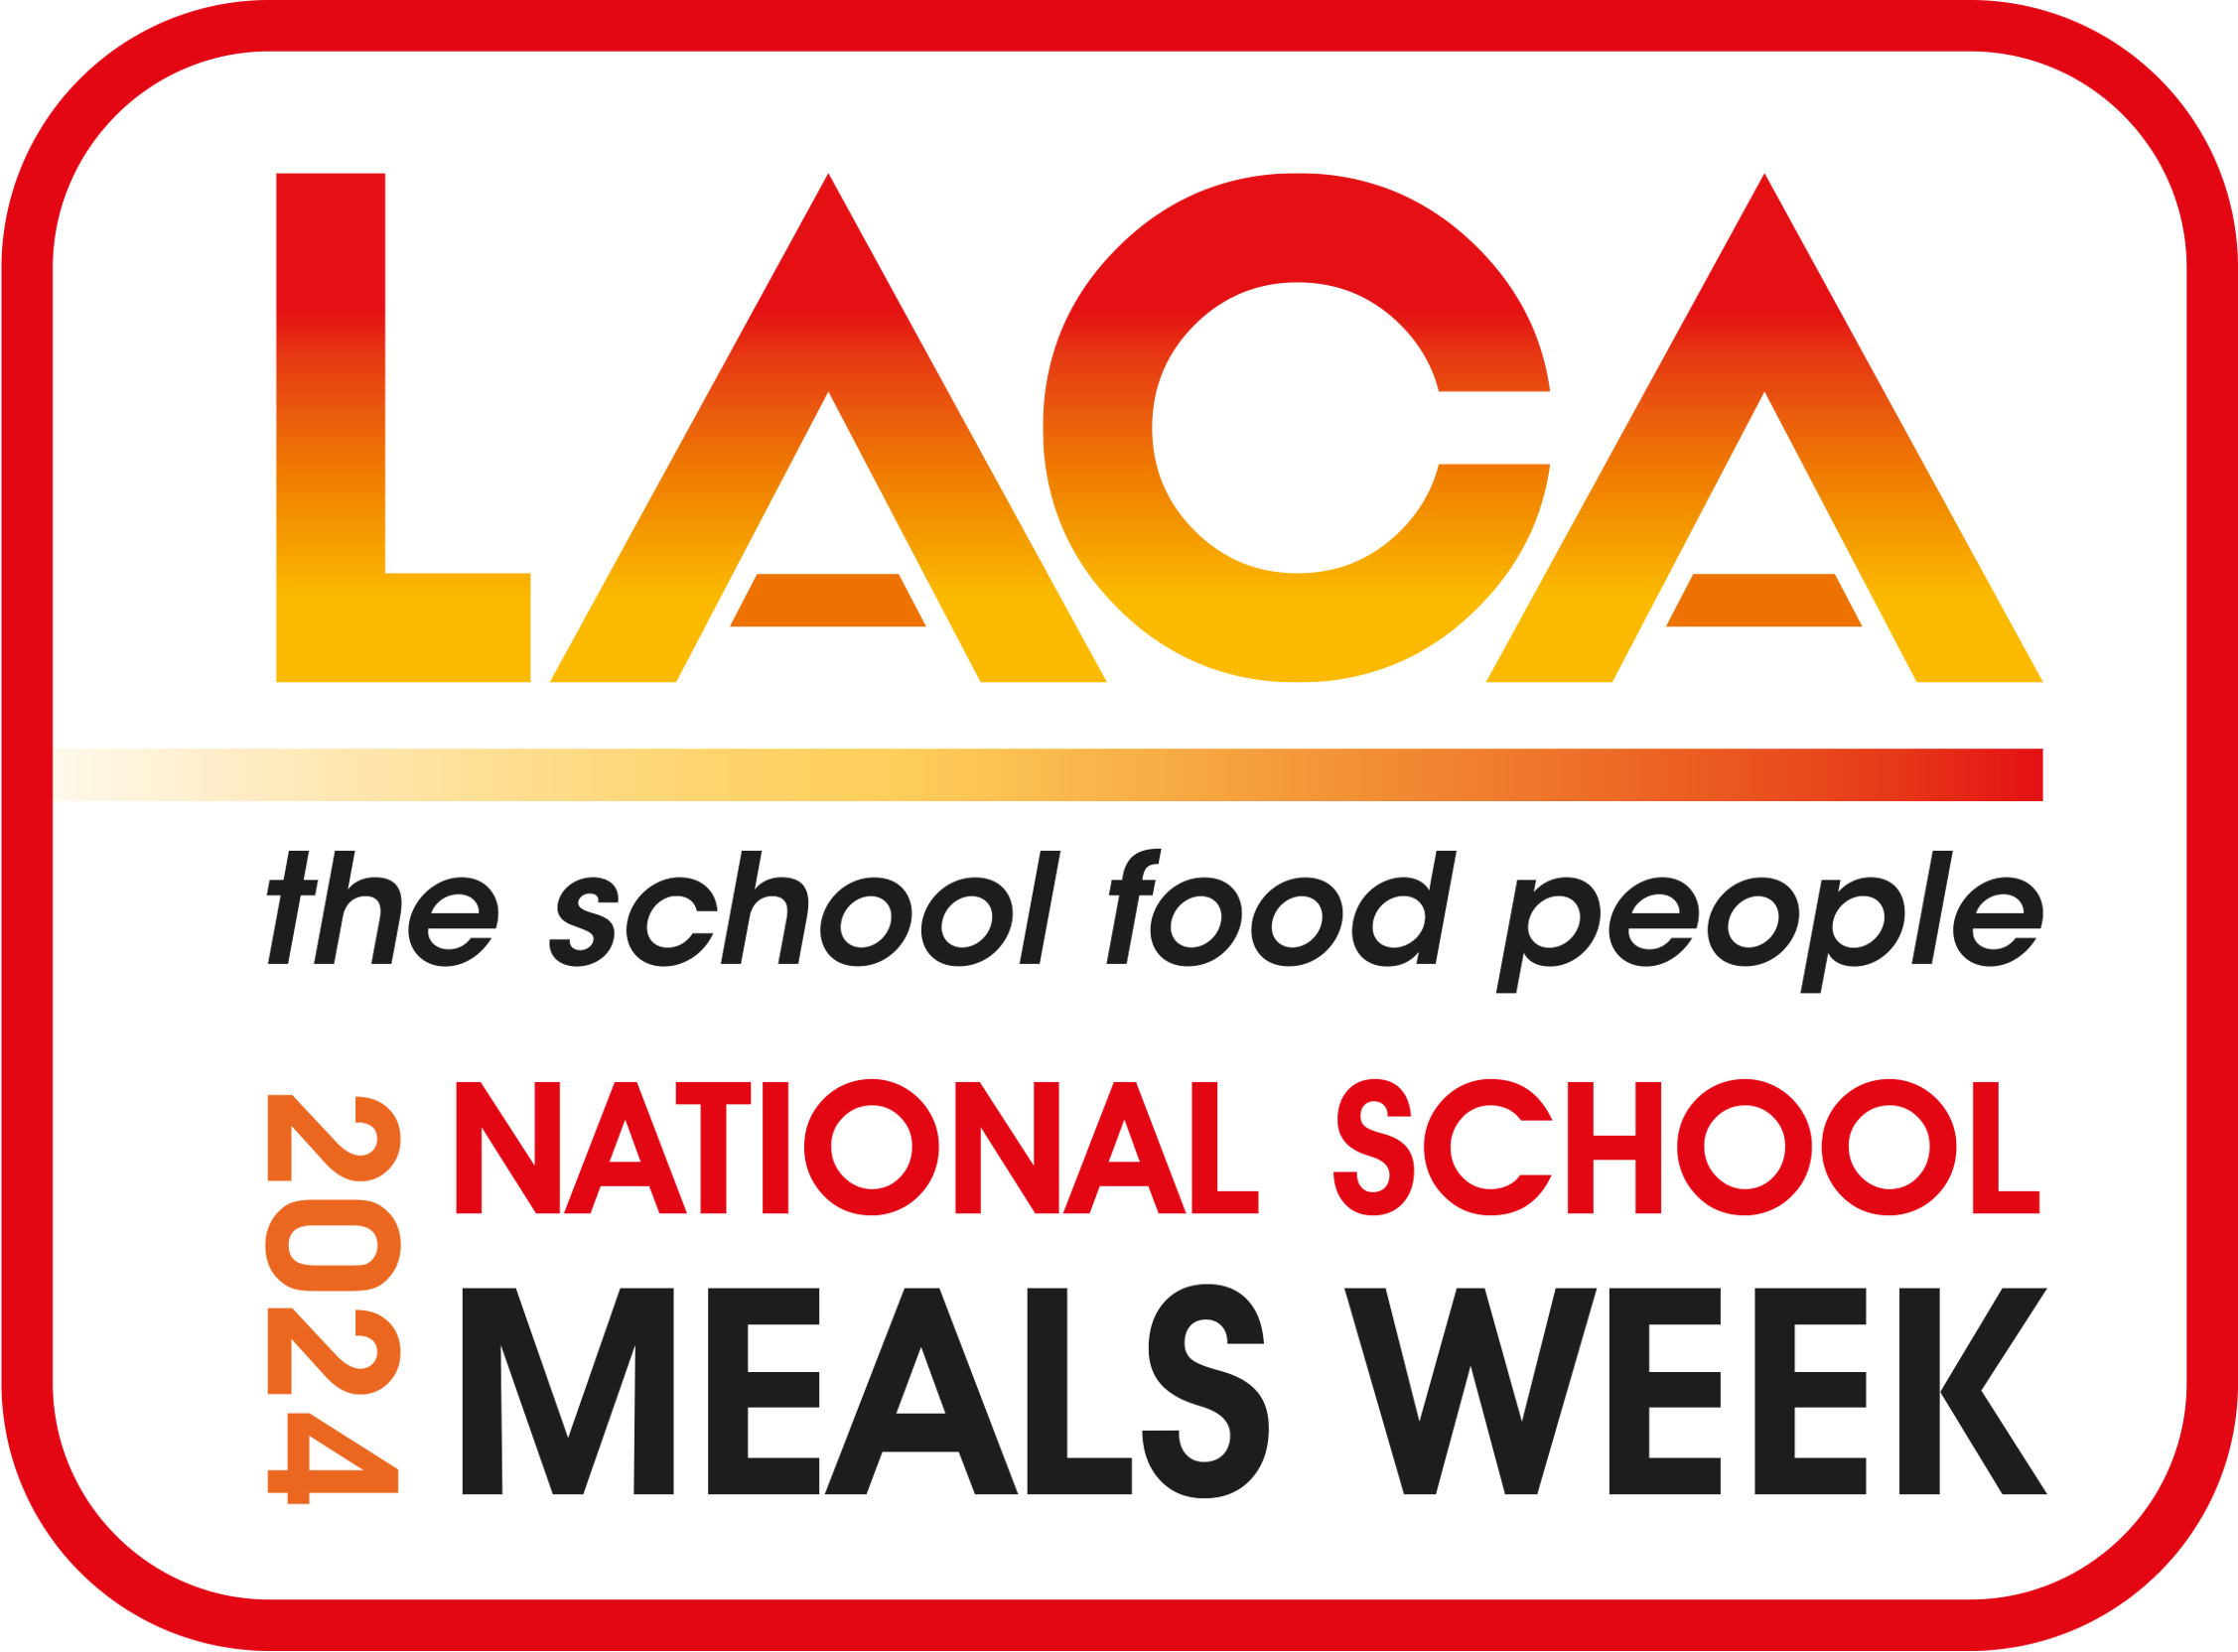 National School Meals Week